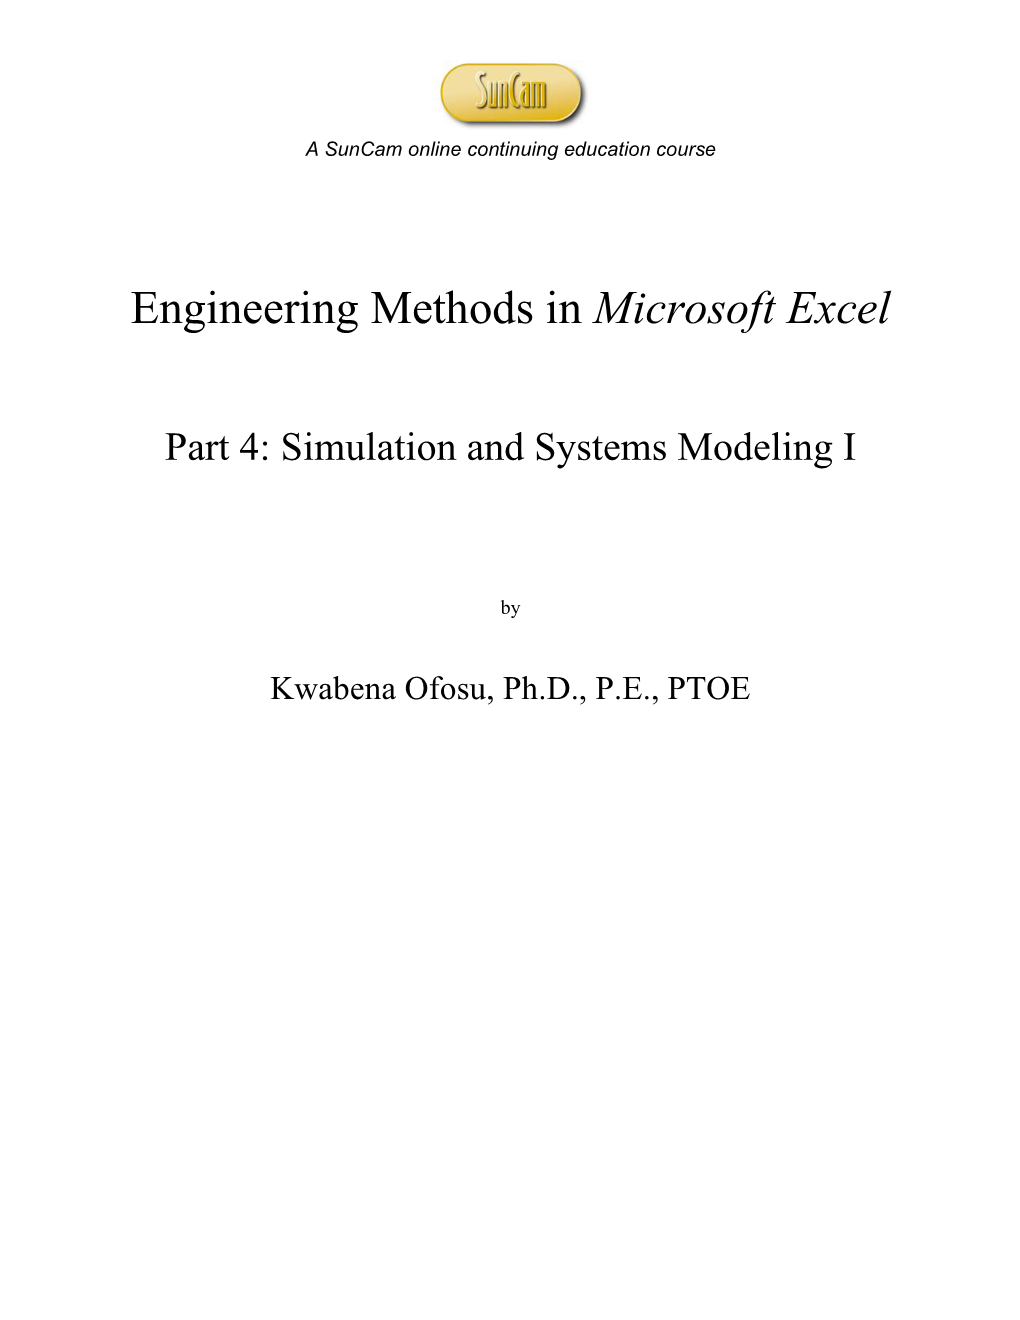 Engineering Methods in Microsoft Excel